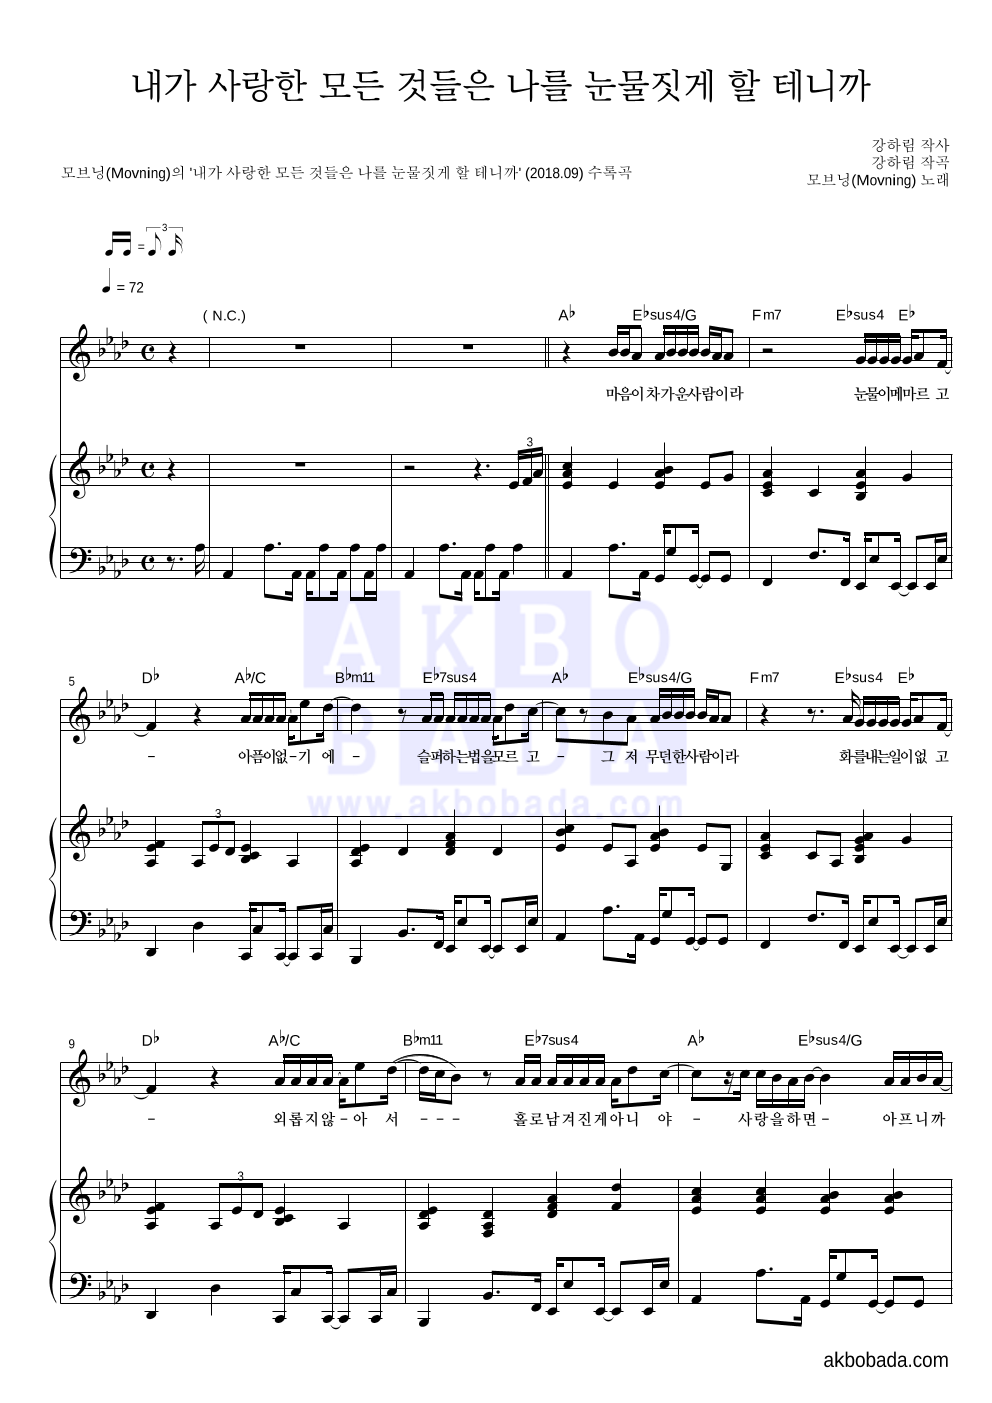 모브닝 - 내가 사랑한 모든 것들은 나를 눈물짓게 할 테니까 피아노 3단 악보 